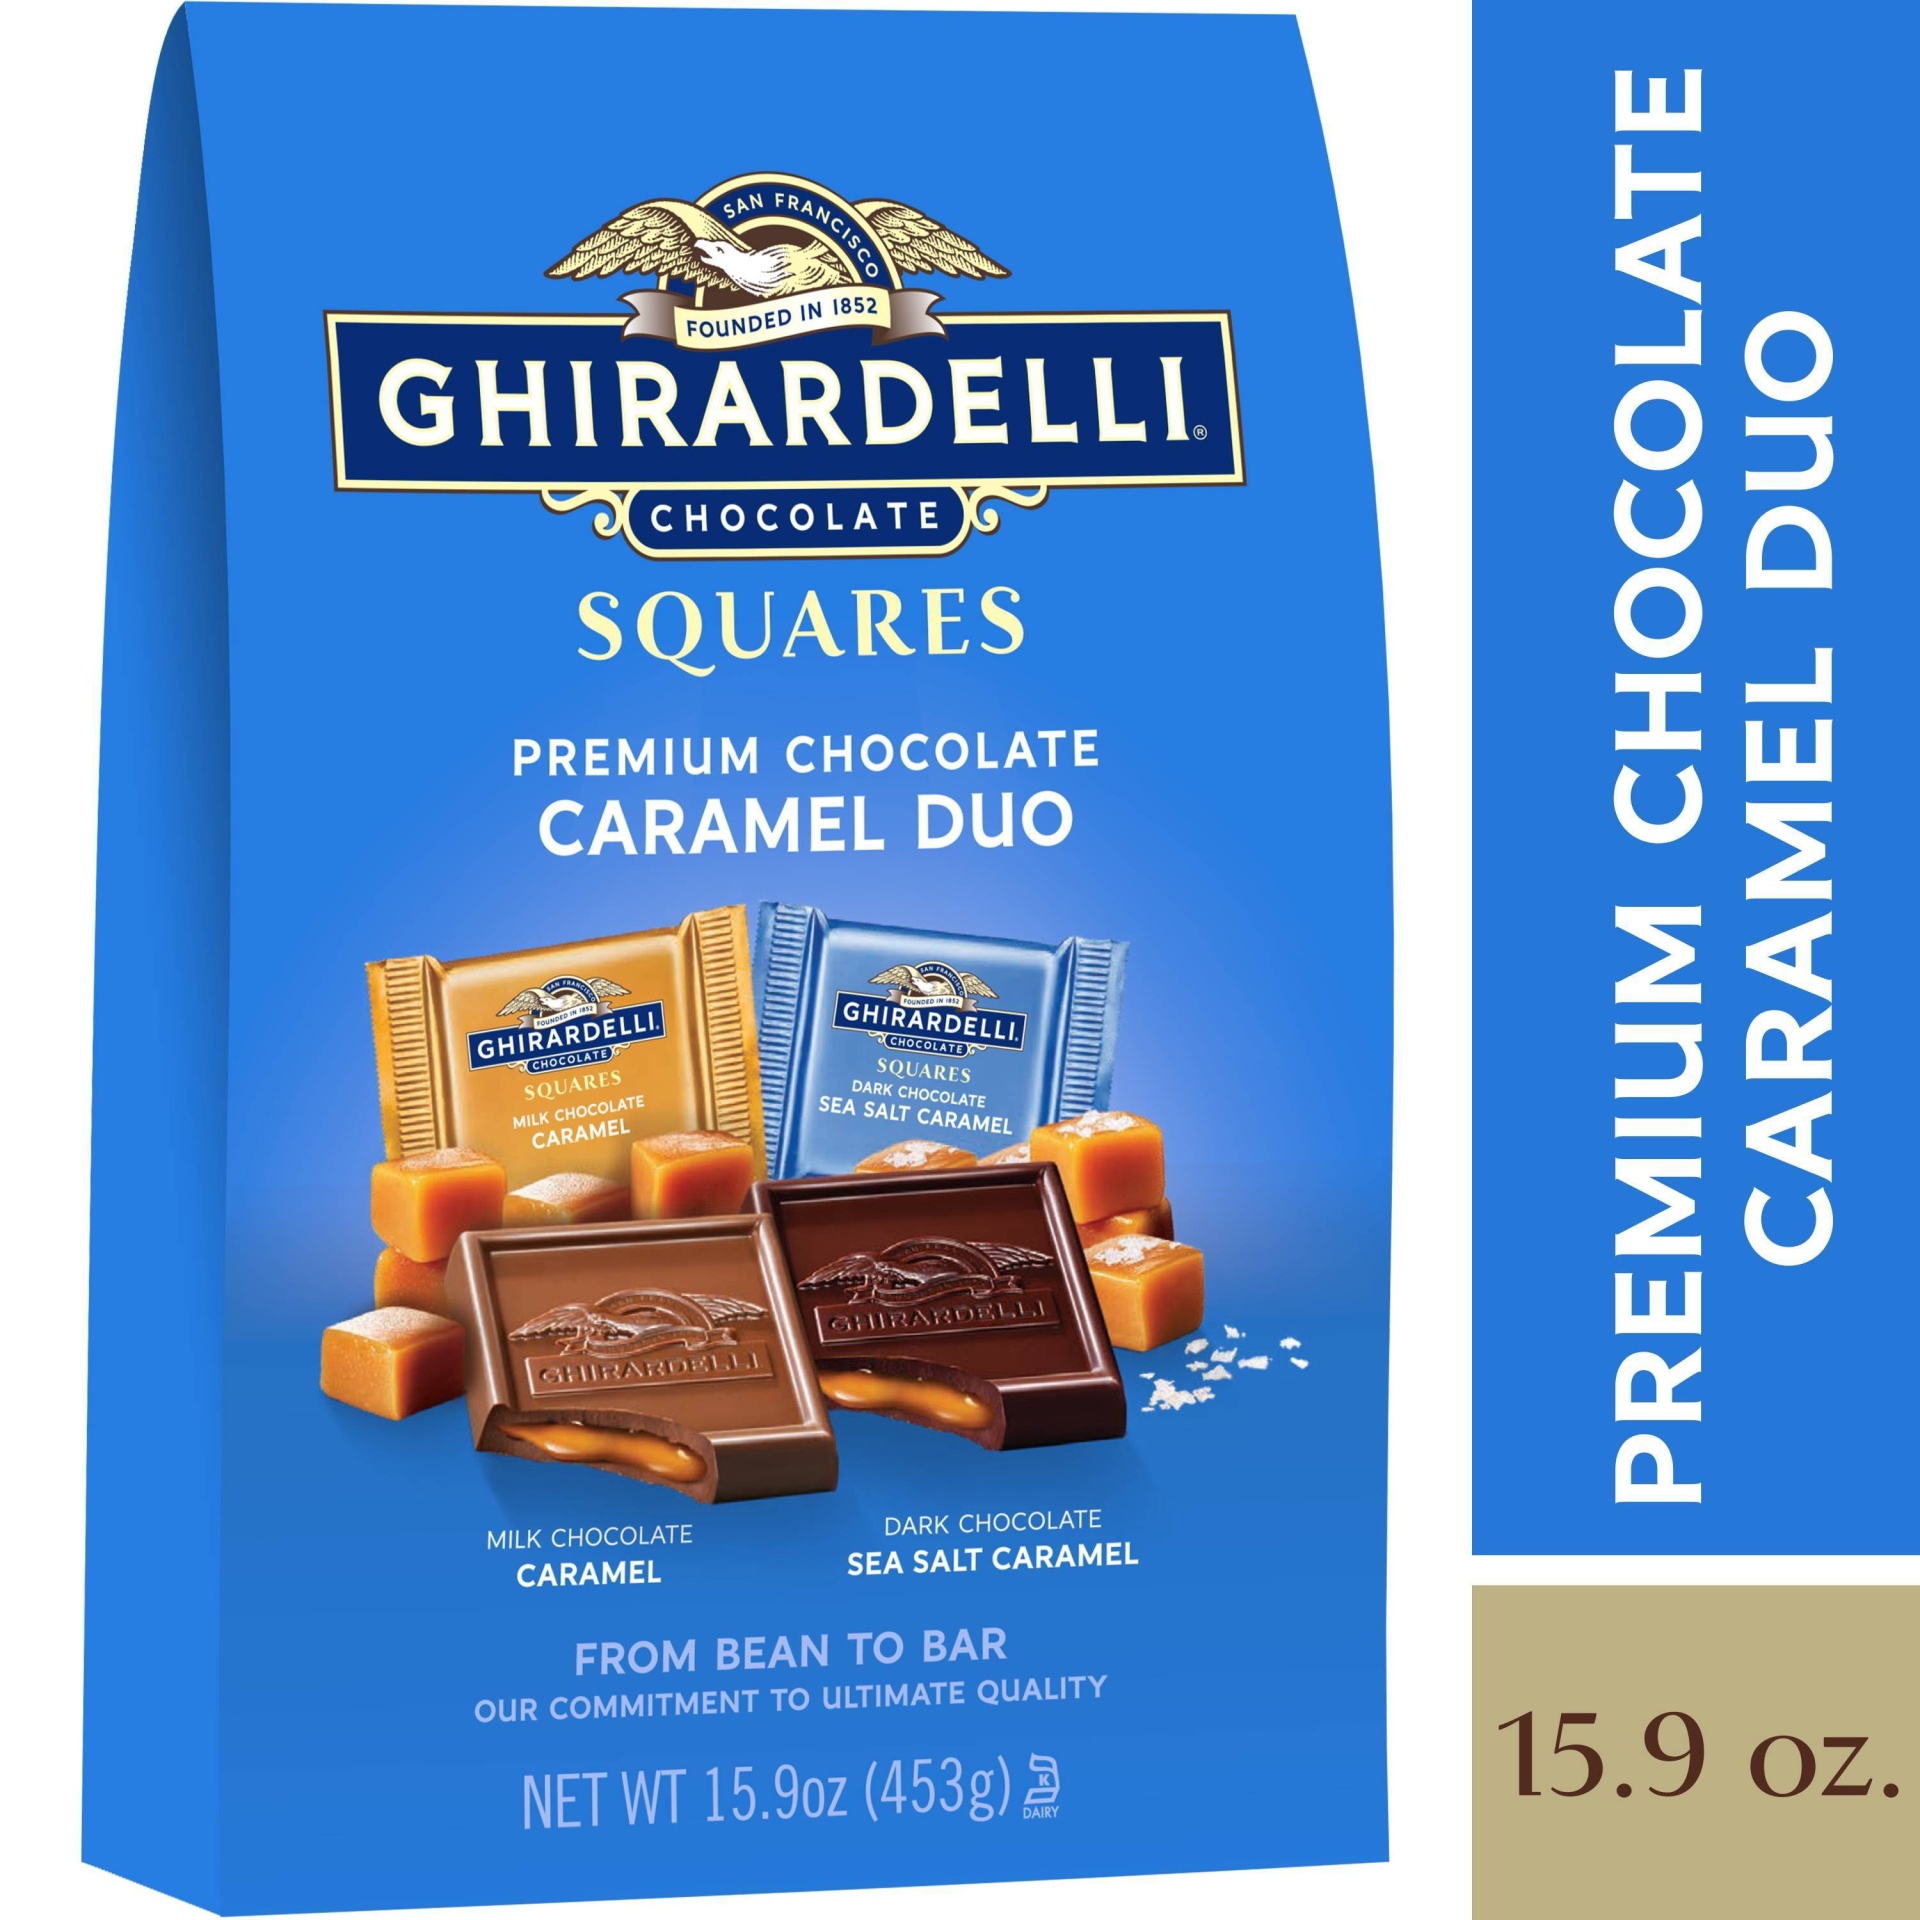 slide 1 of 2, Ghirardelli Chocolate Squares Caramel Duo Premium Chocolate, 15.9 oz